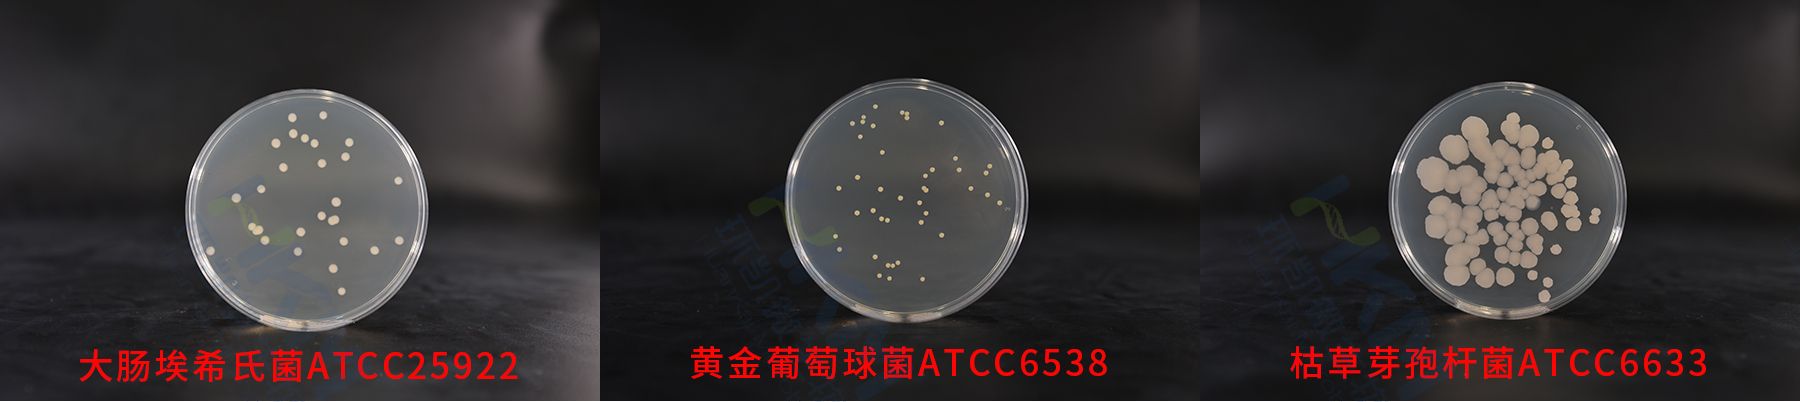 平板计数琼脂(PCA)质控菌株生物图册